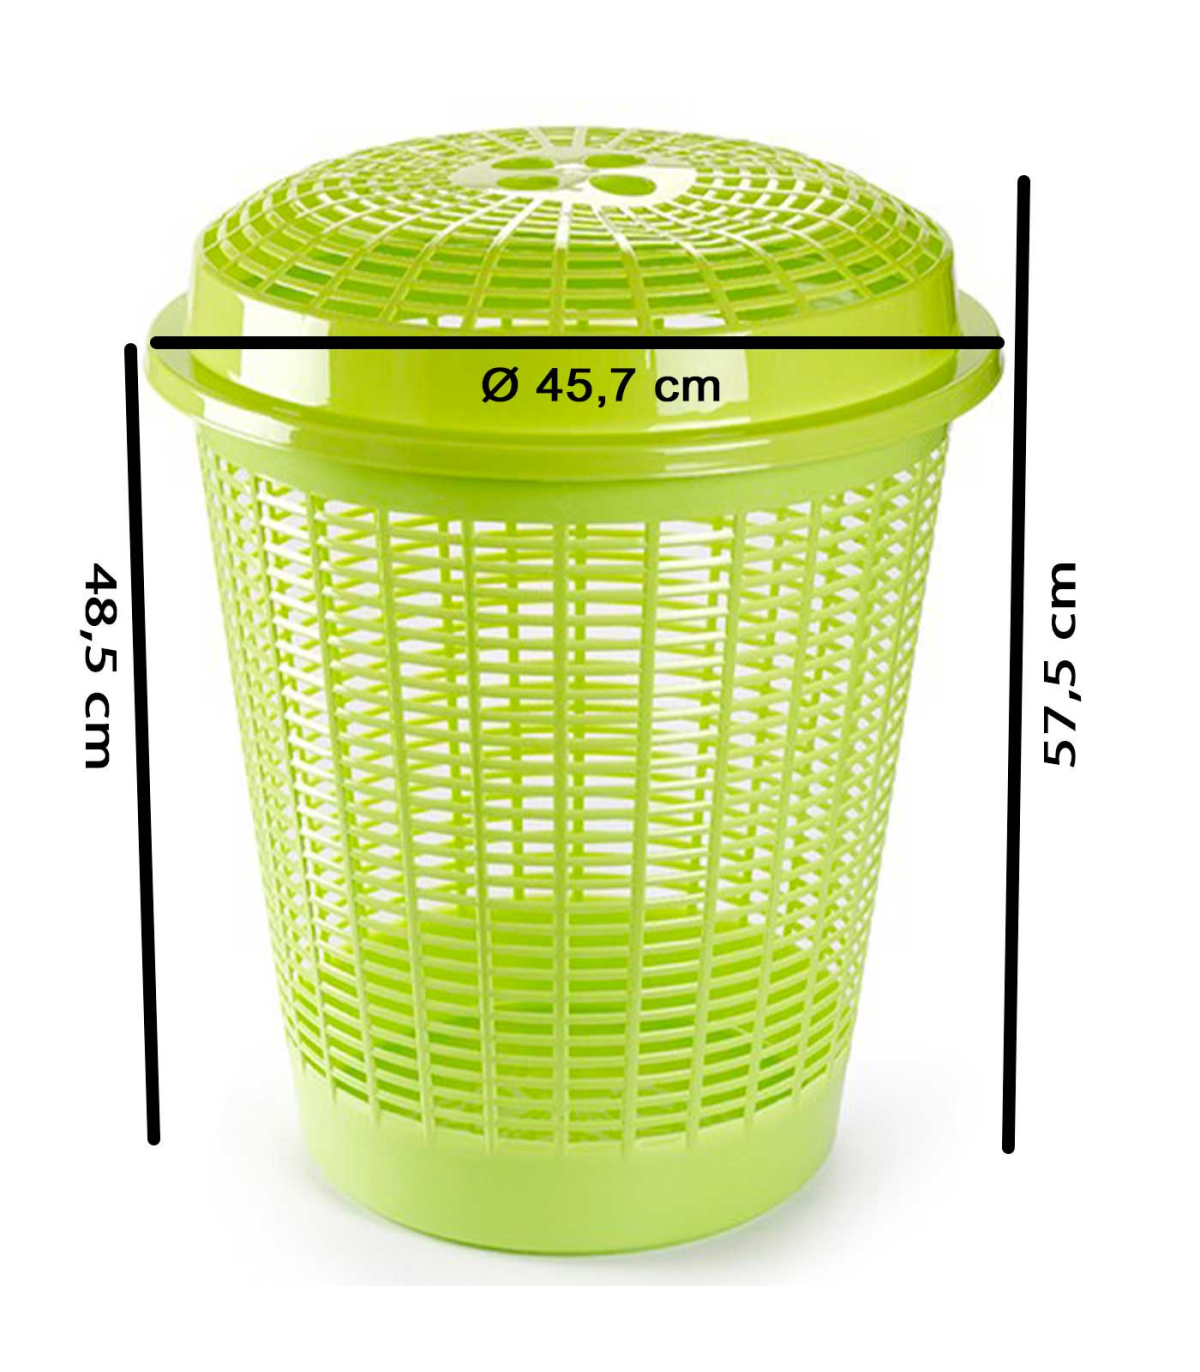 Tradineur - Cesto para ropa sucia de plástico con tapa 60 litros